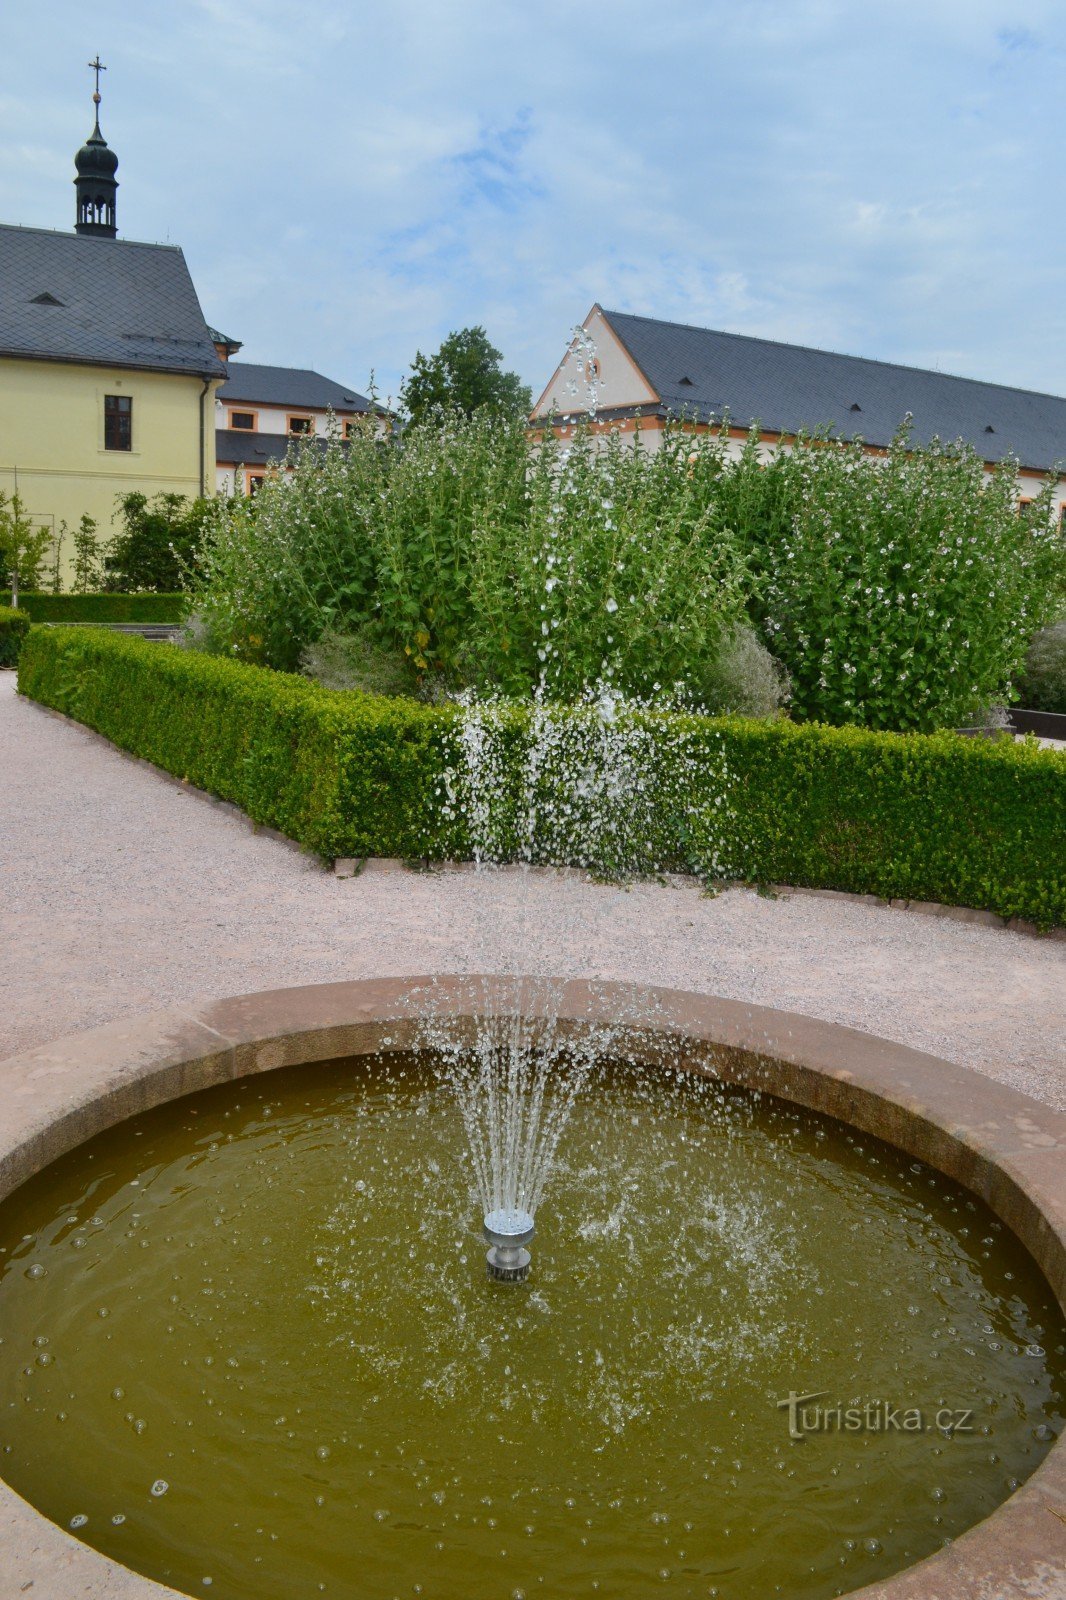 fontana u biljnom vrtu